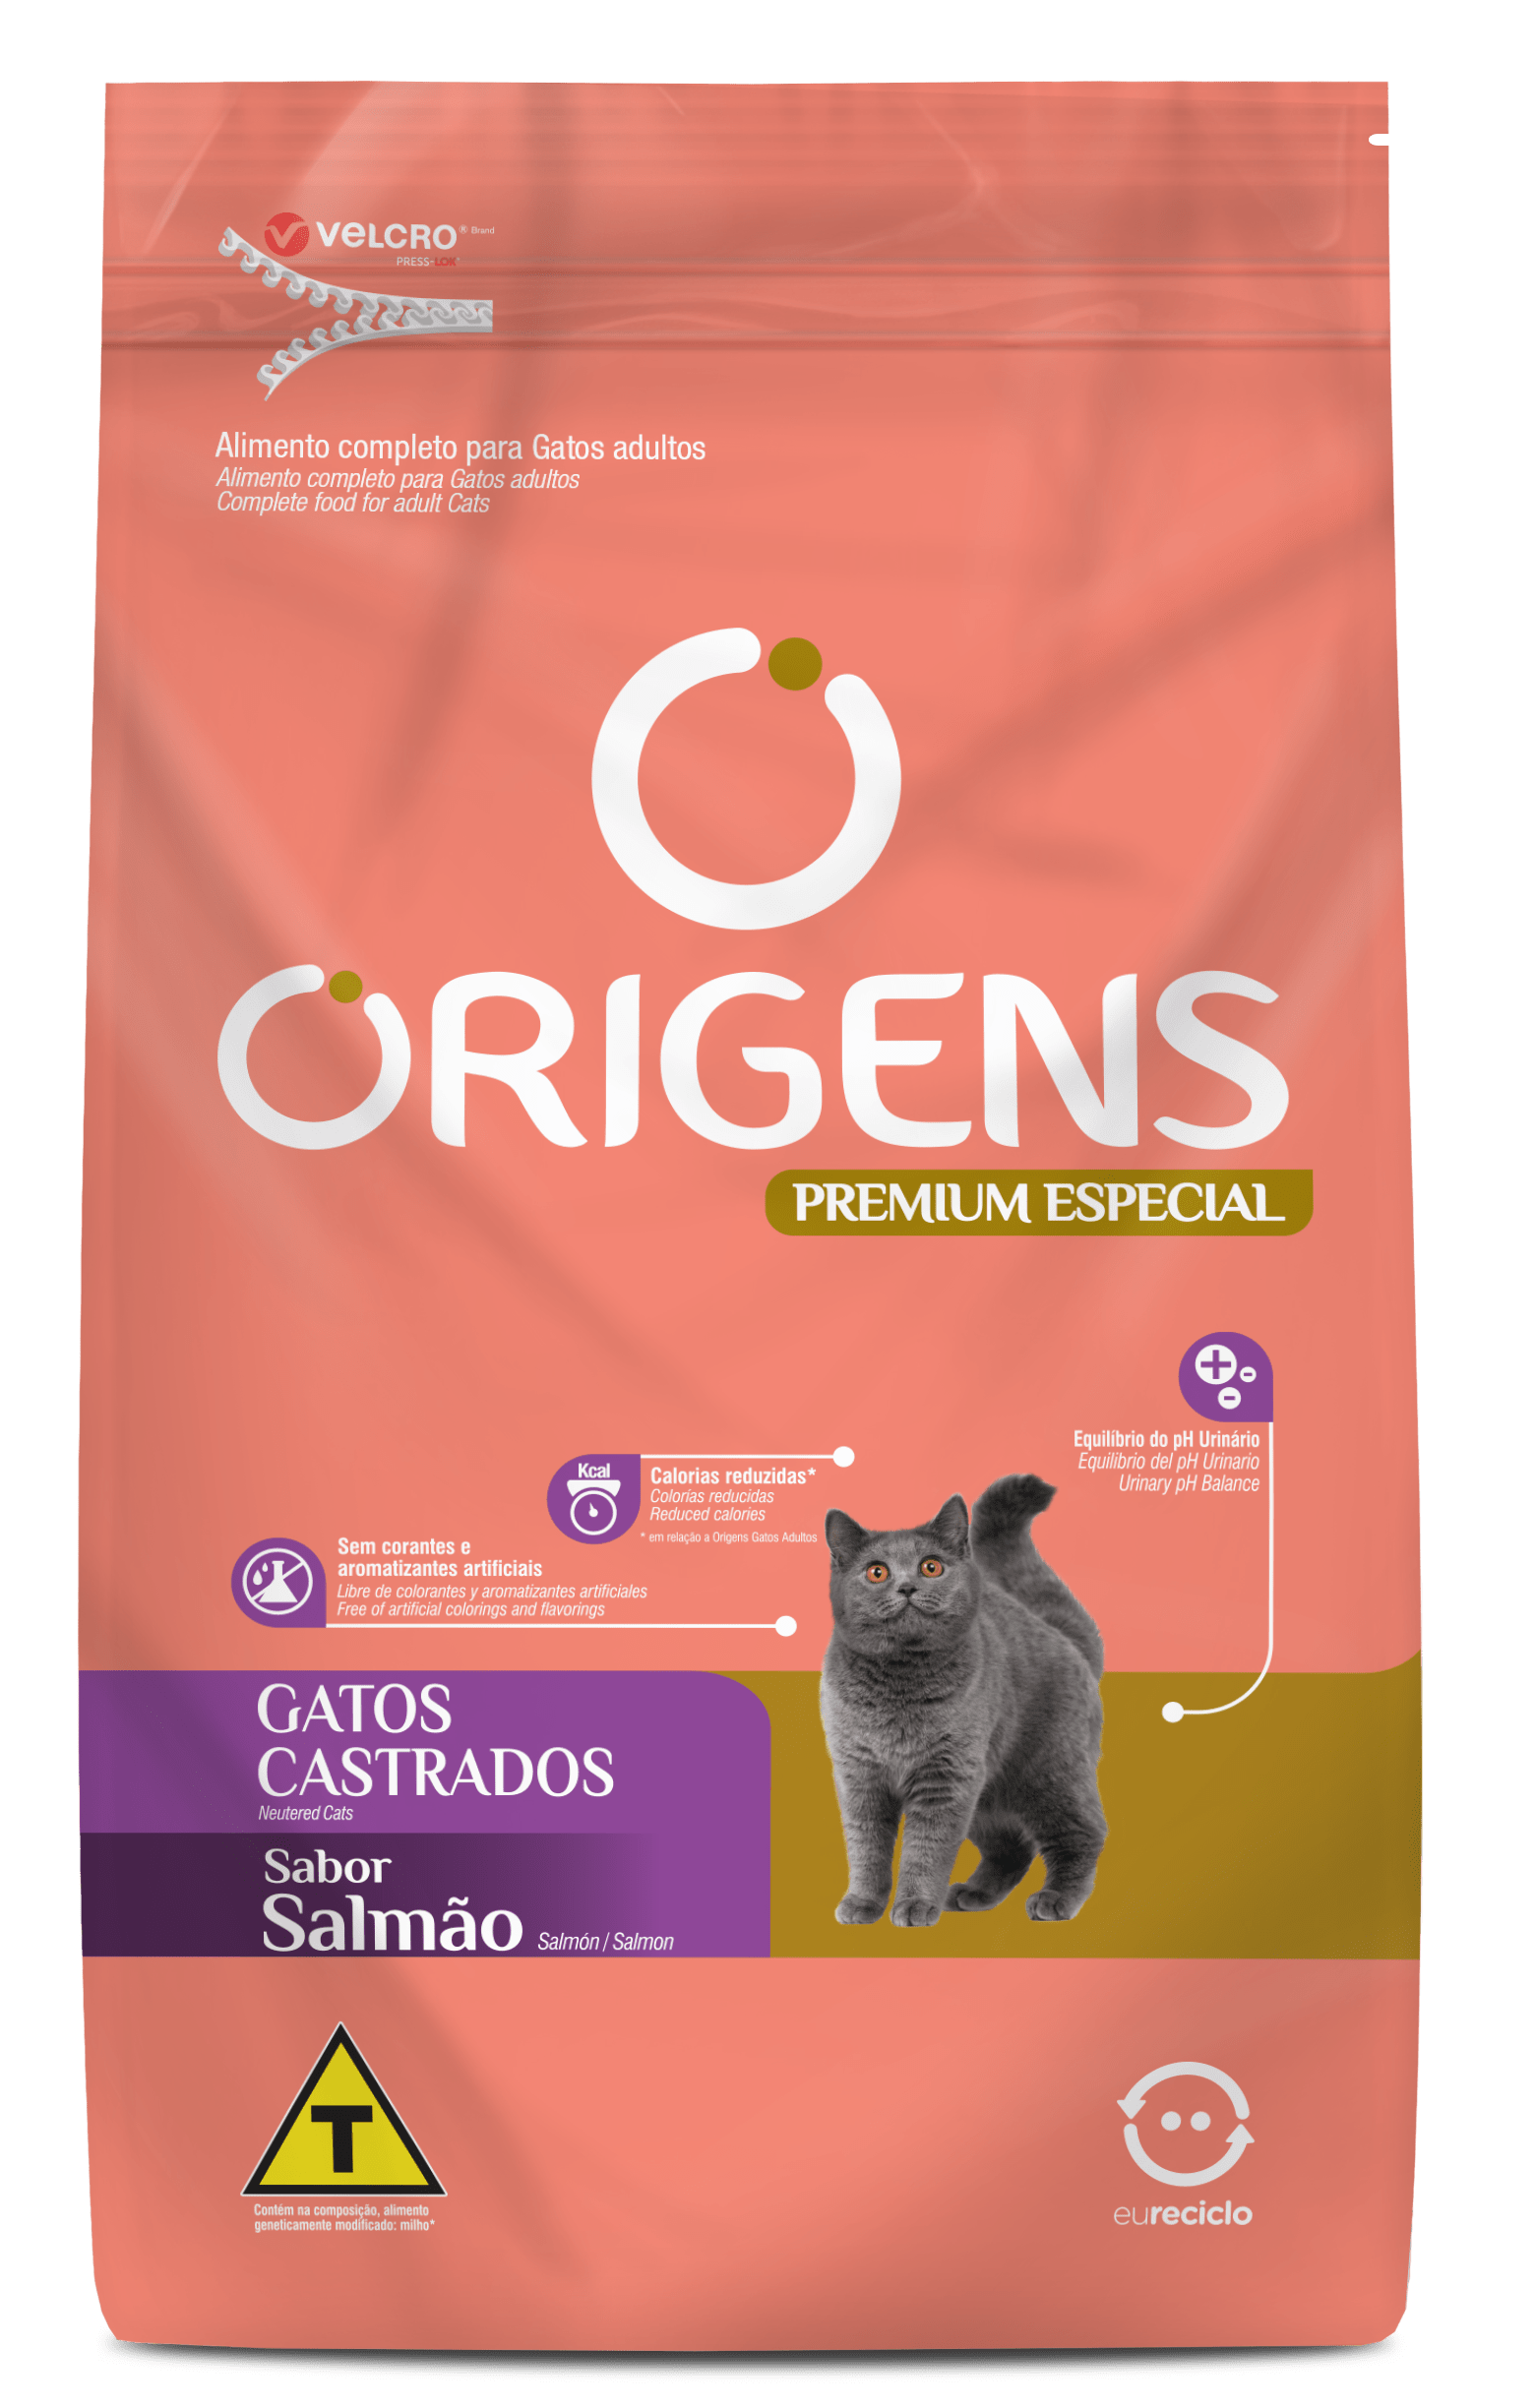 Origens Premium Especial Neutered Cats Salmon flavor